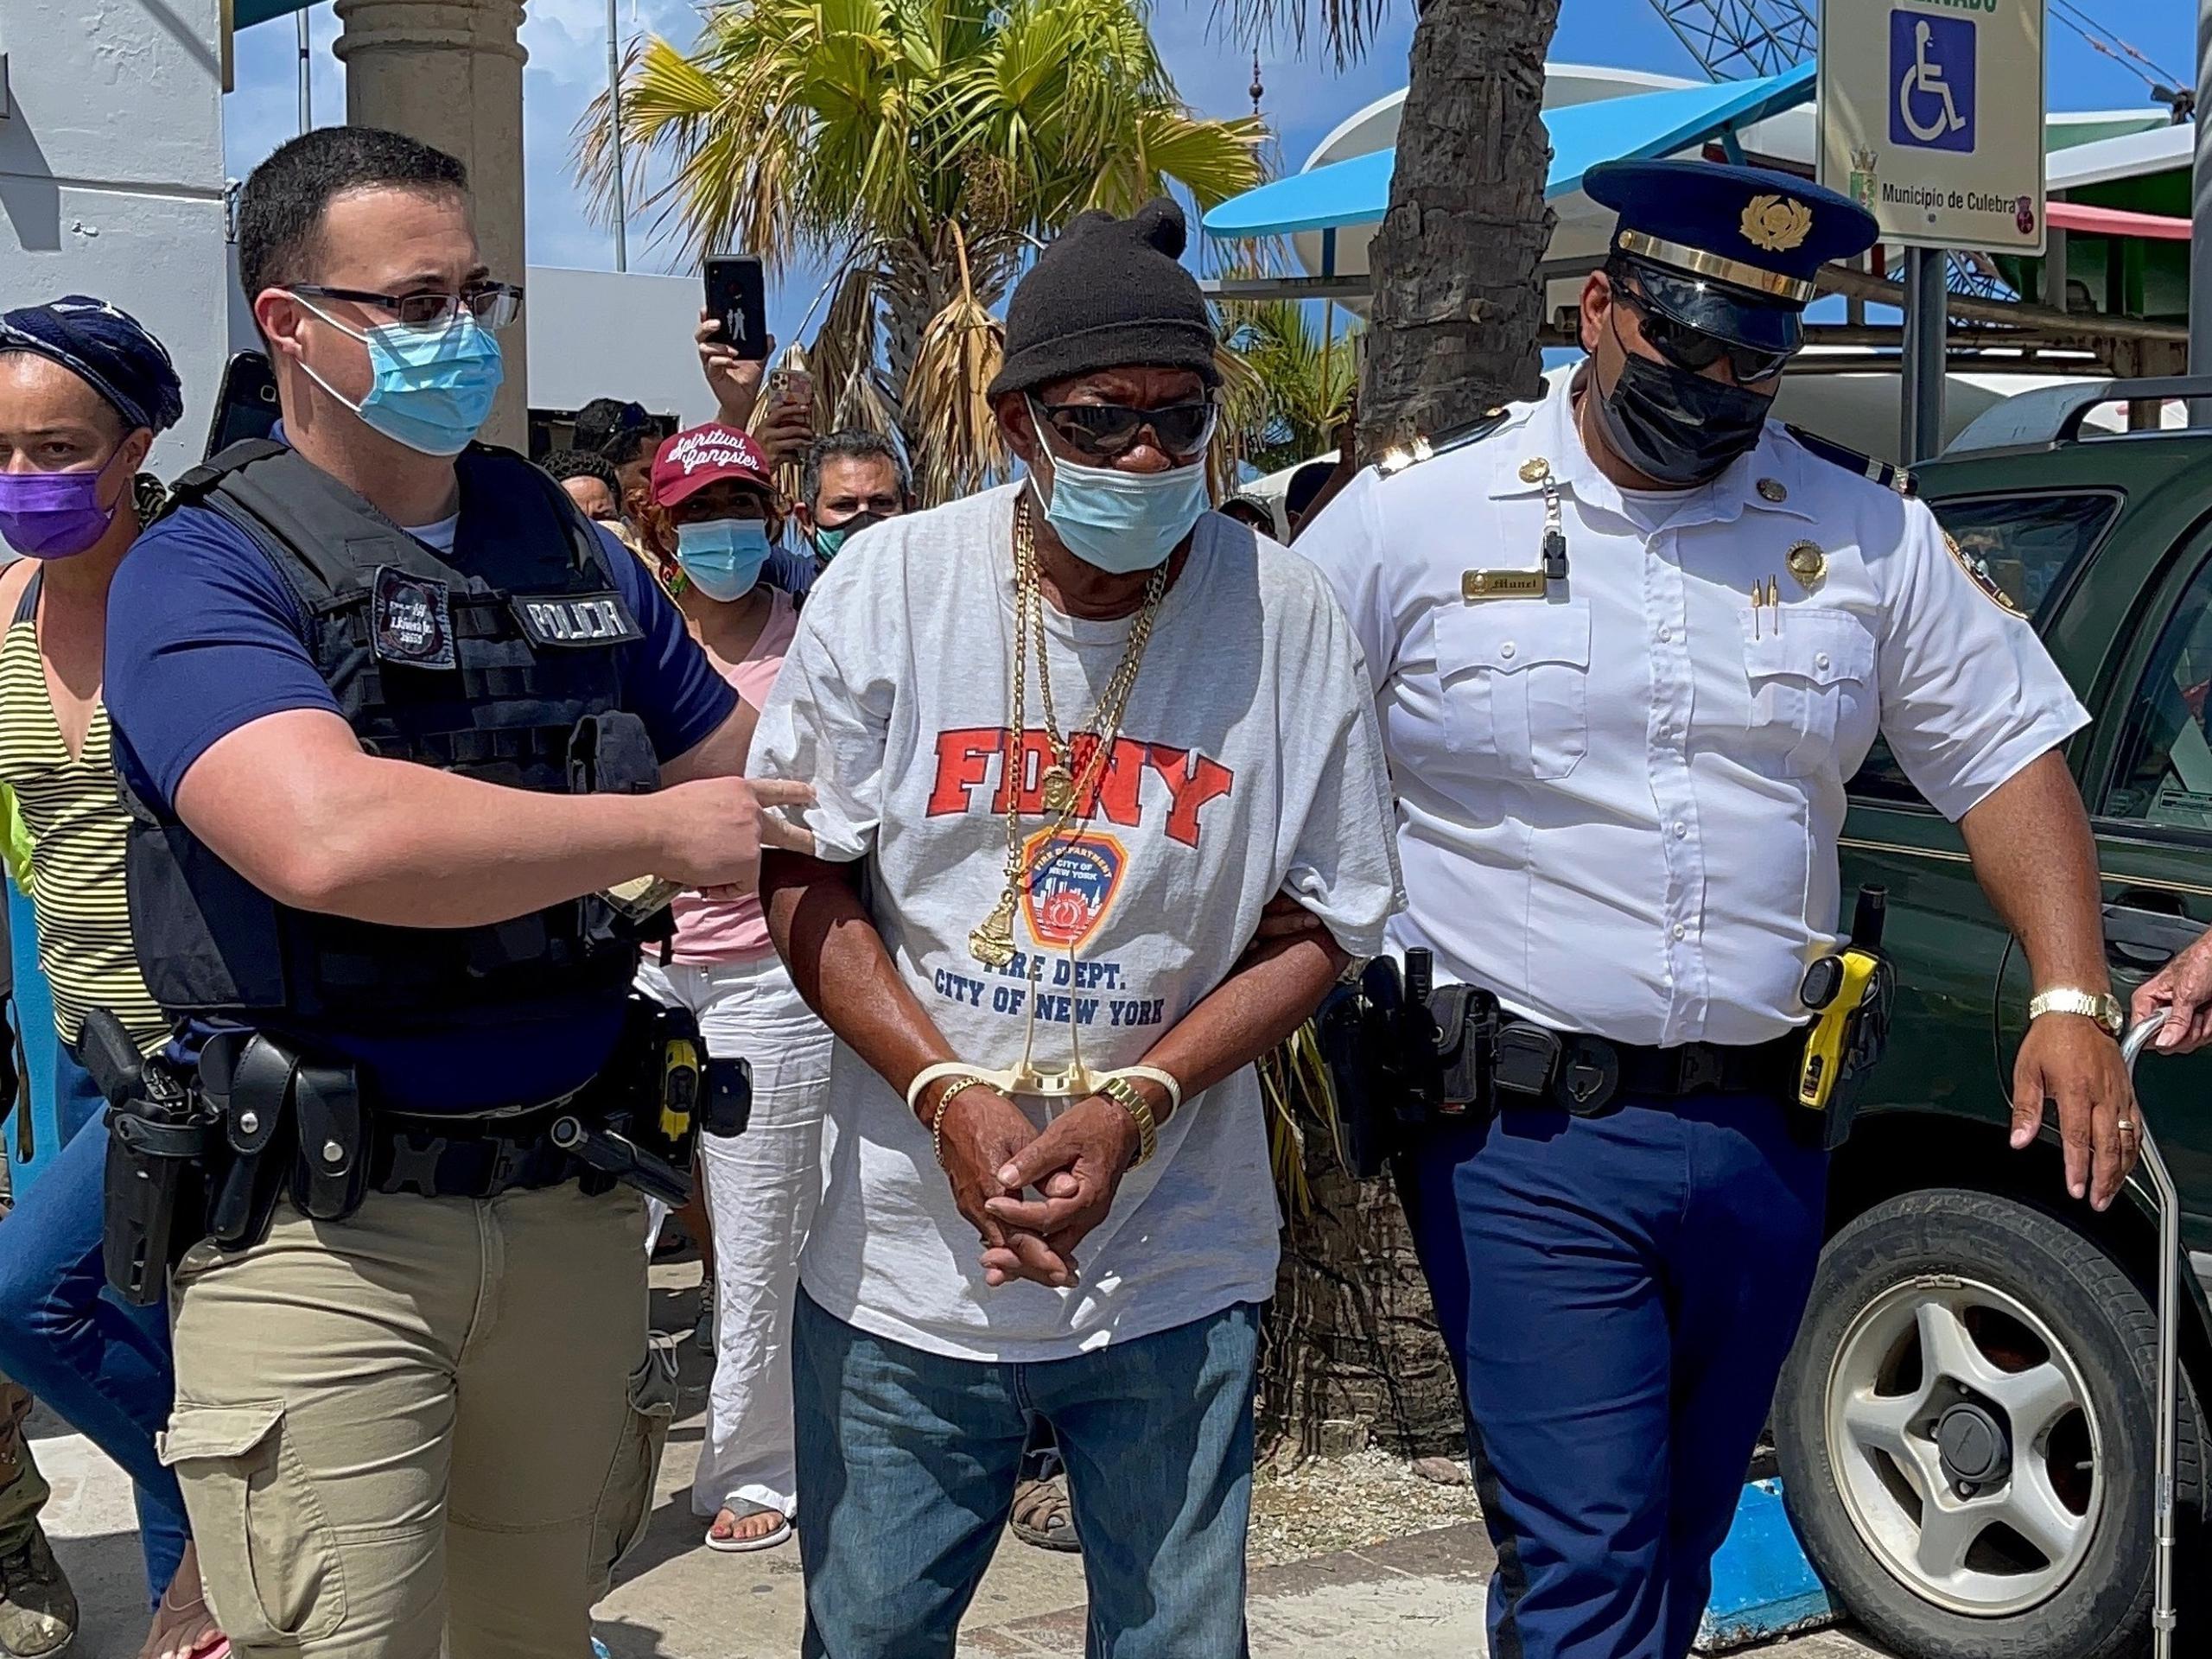 La Policía arresta a un manifestante en Culebra tras protesta marítima eb Culebra.